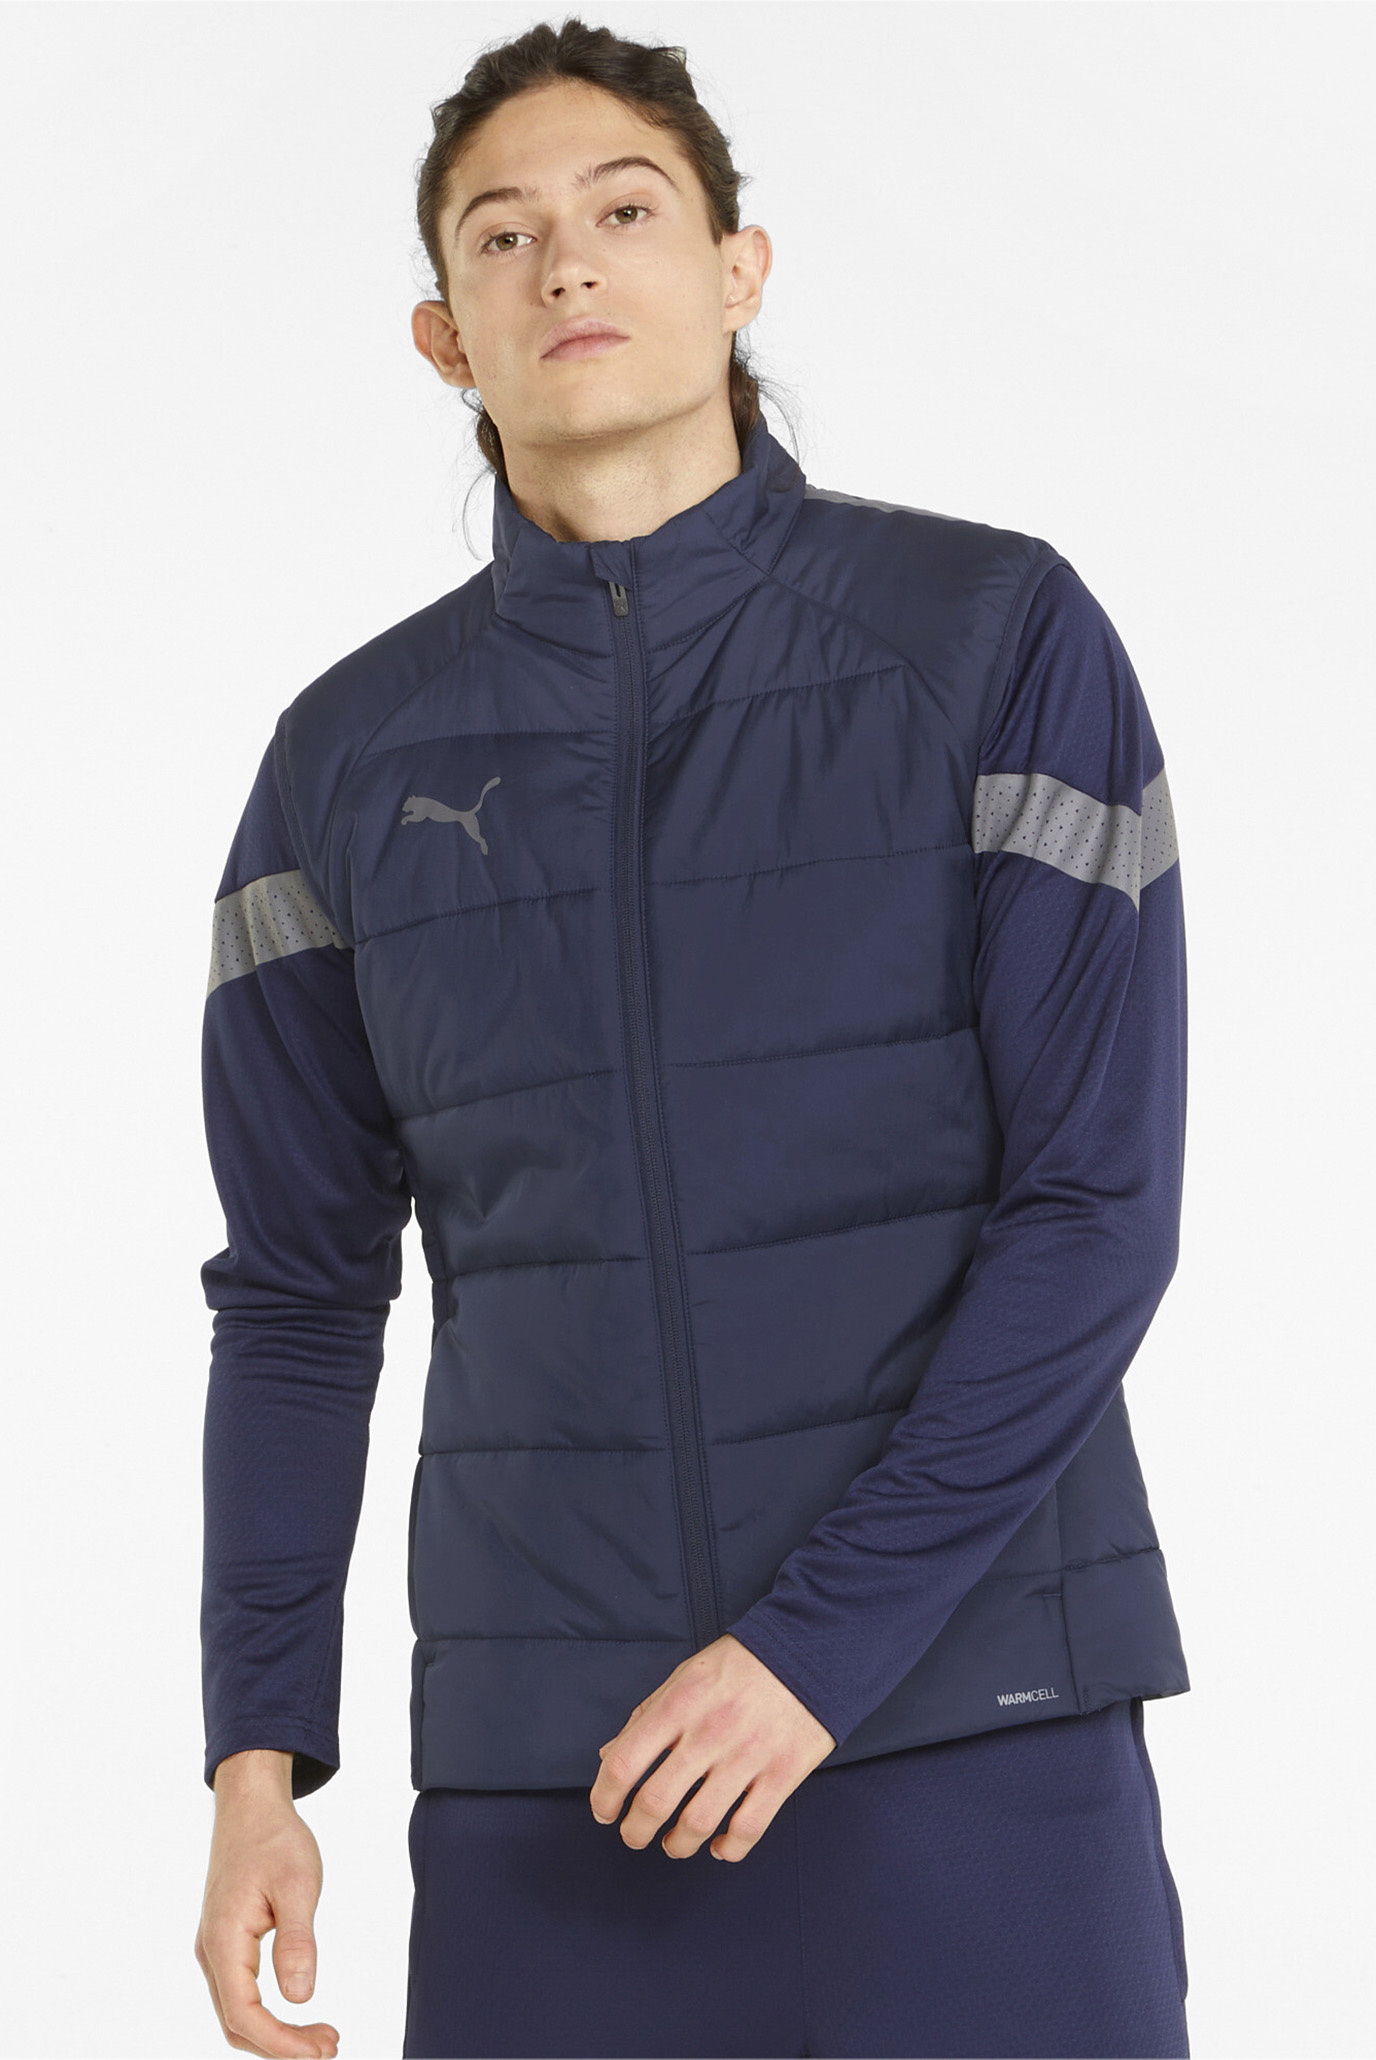 Мужской темно-синий жилет teamLIGA Men’s Football Vest Jacket 1